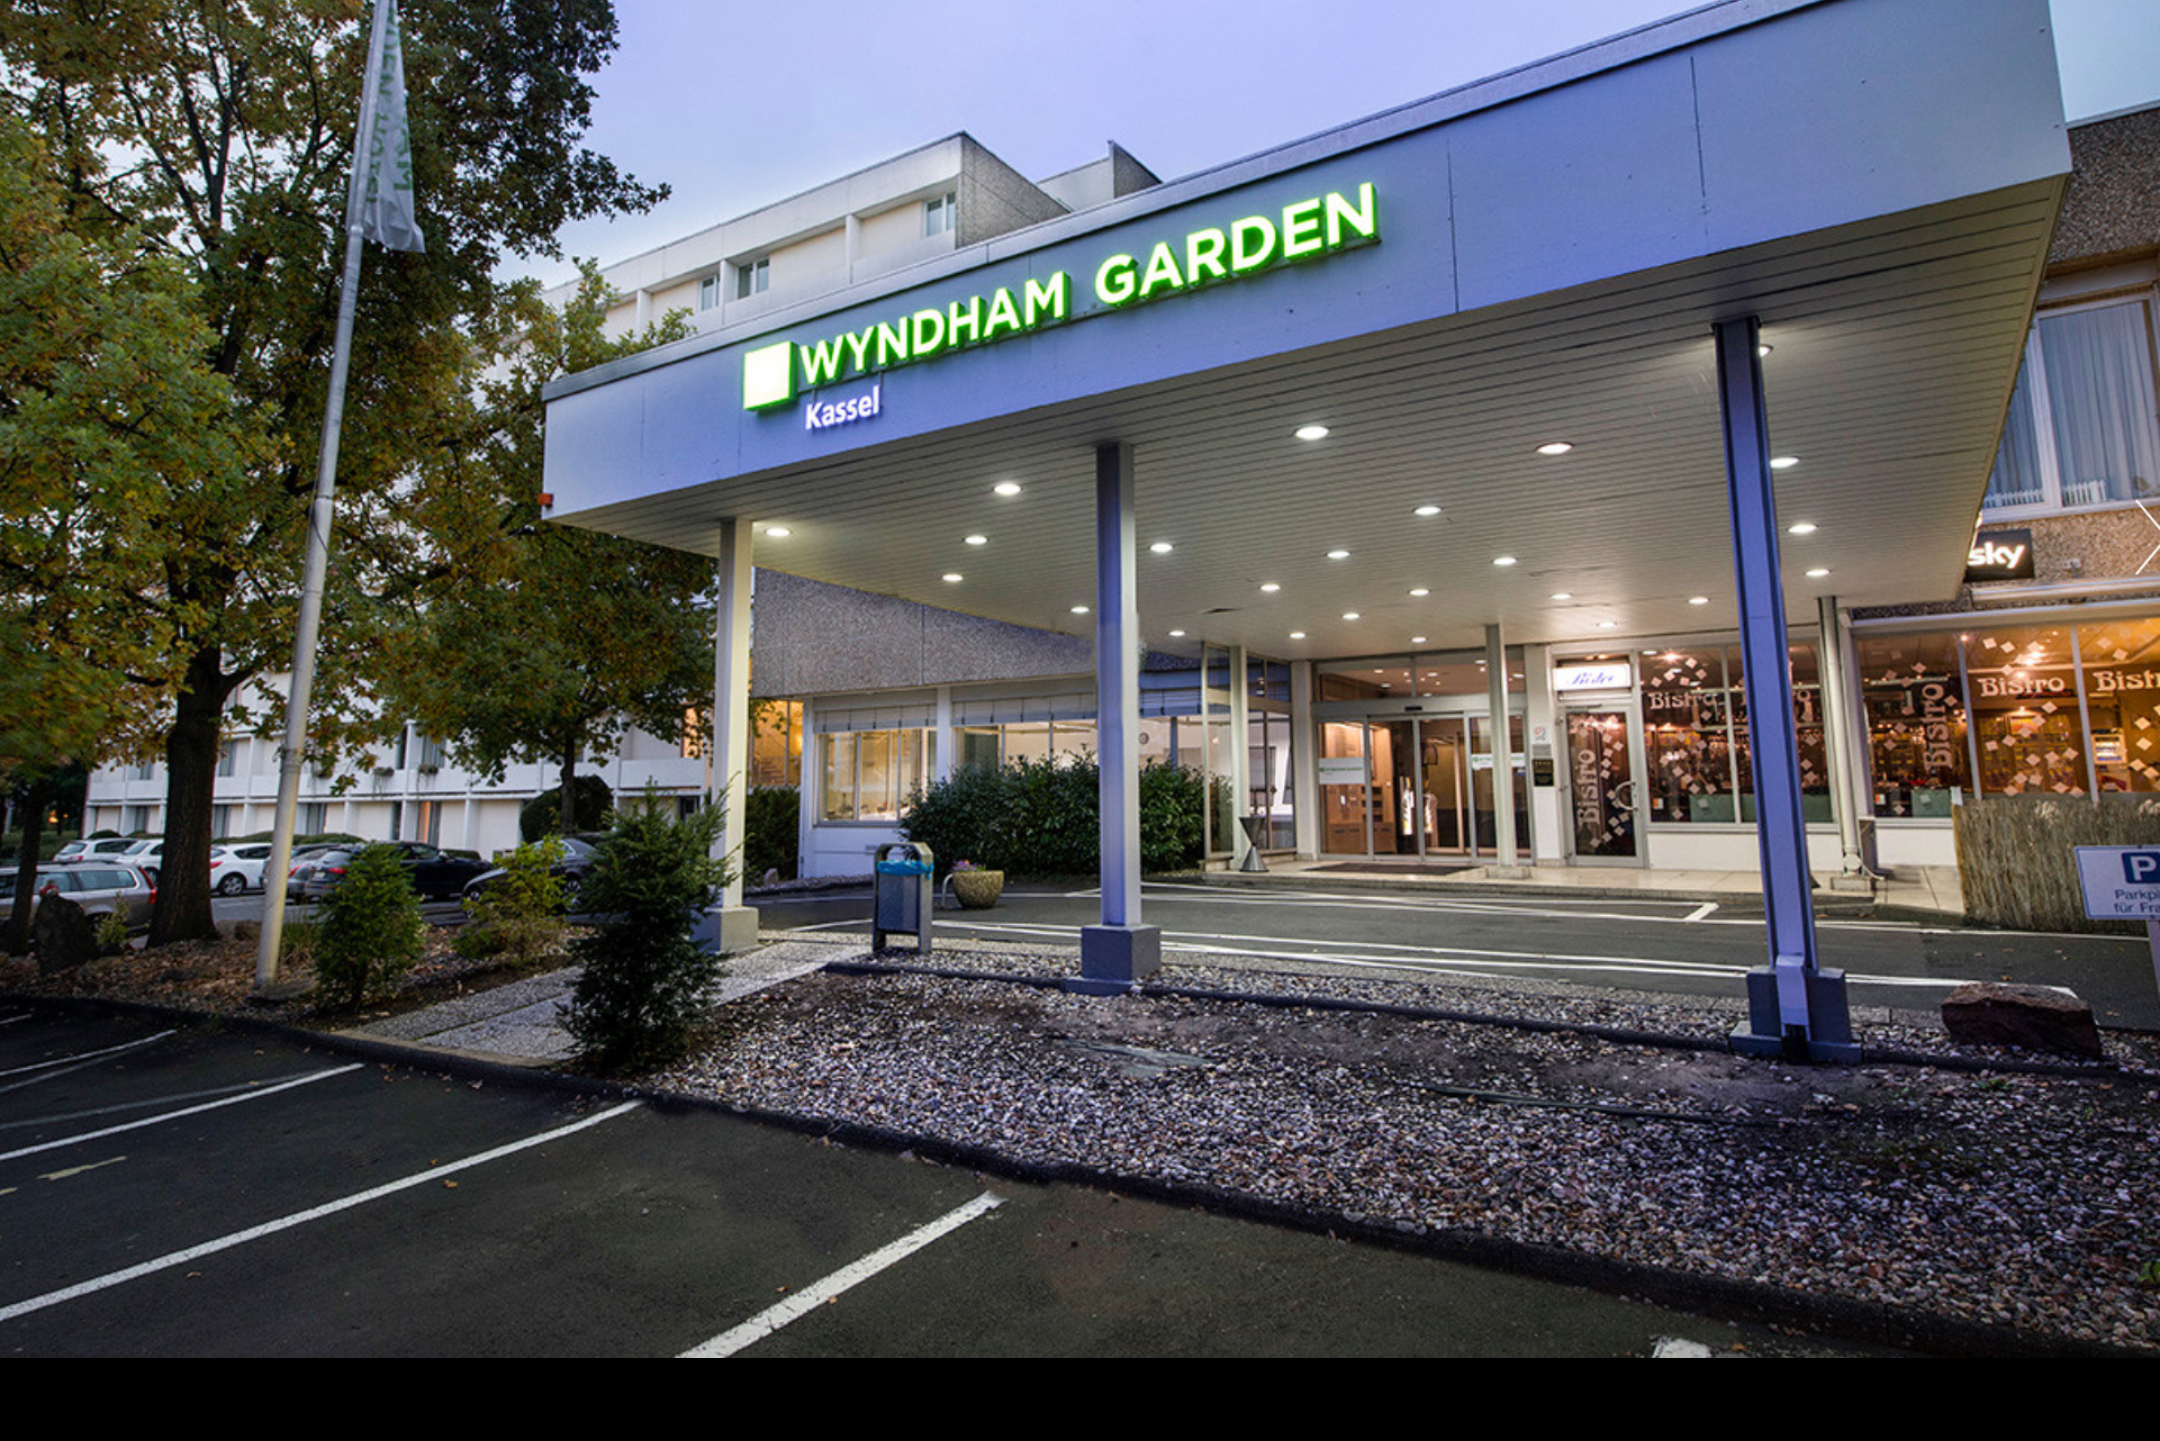 Wyndham Garden Kassel Hotel1